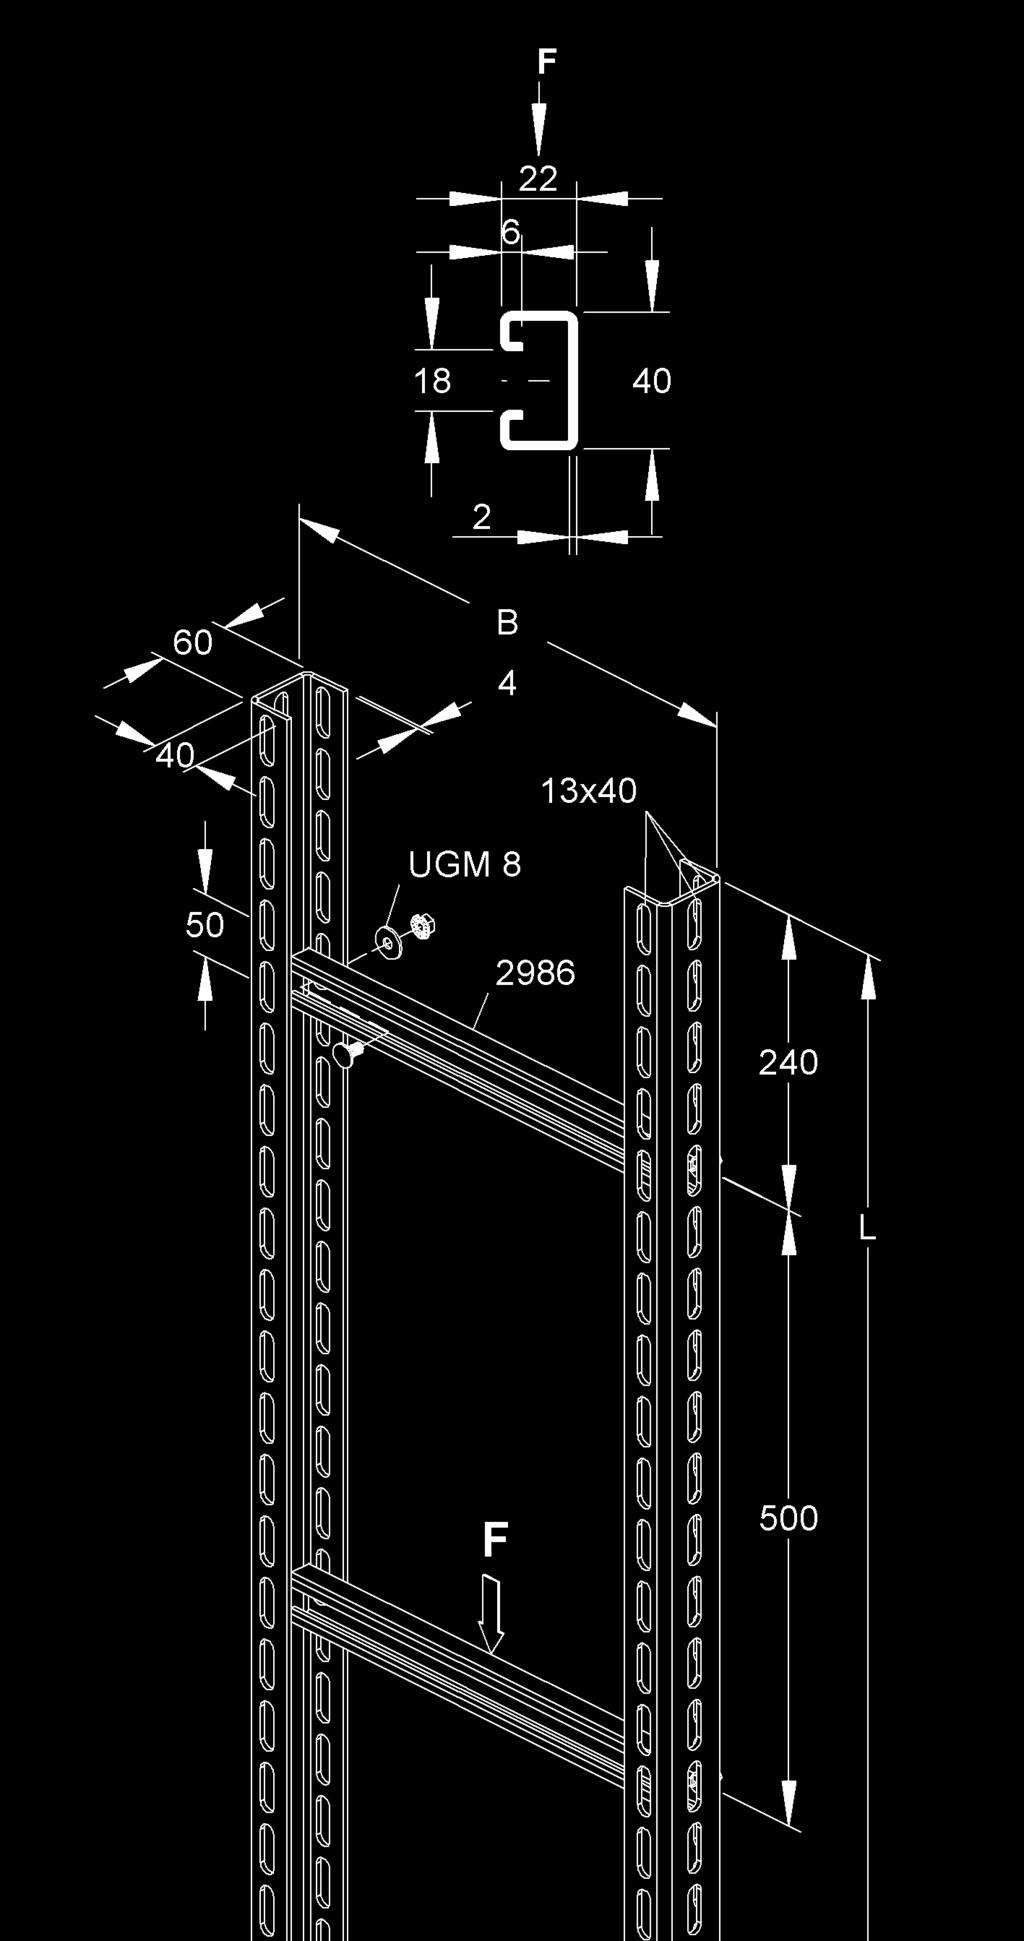 STEIGETRASSEN-SYSTE Steigetrasse aus U 6040 Profilen und Ankerschienen odell 2986 (C-Profil), unmontiert Höhe H Breite B änge zul.